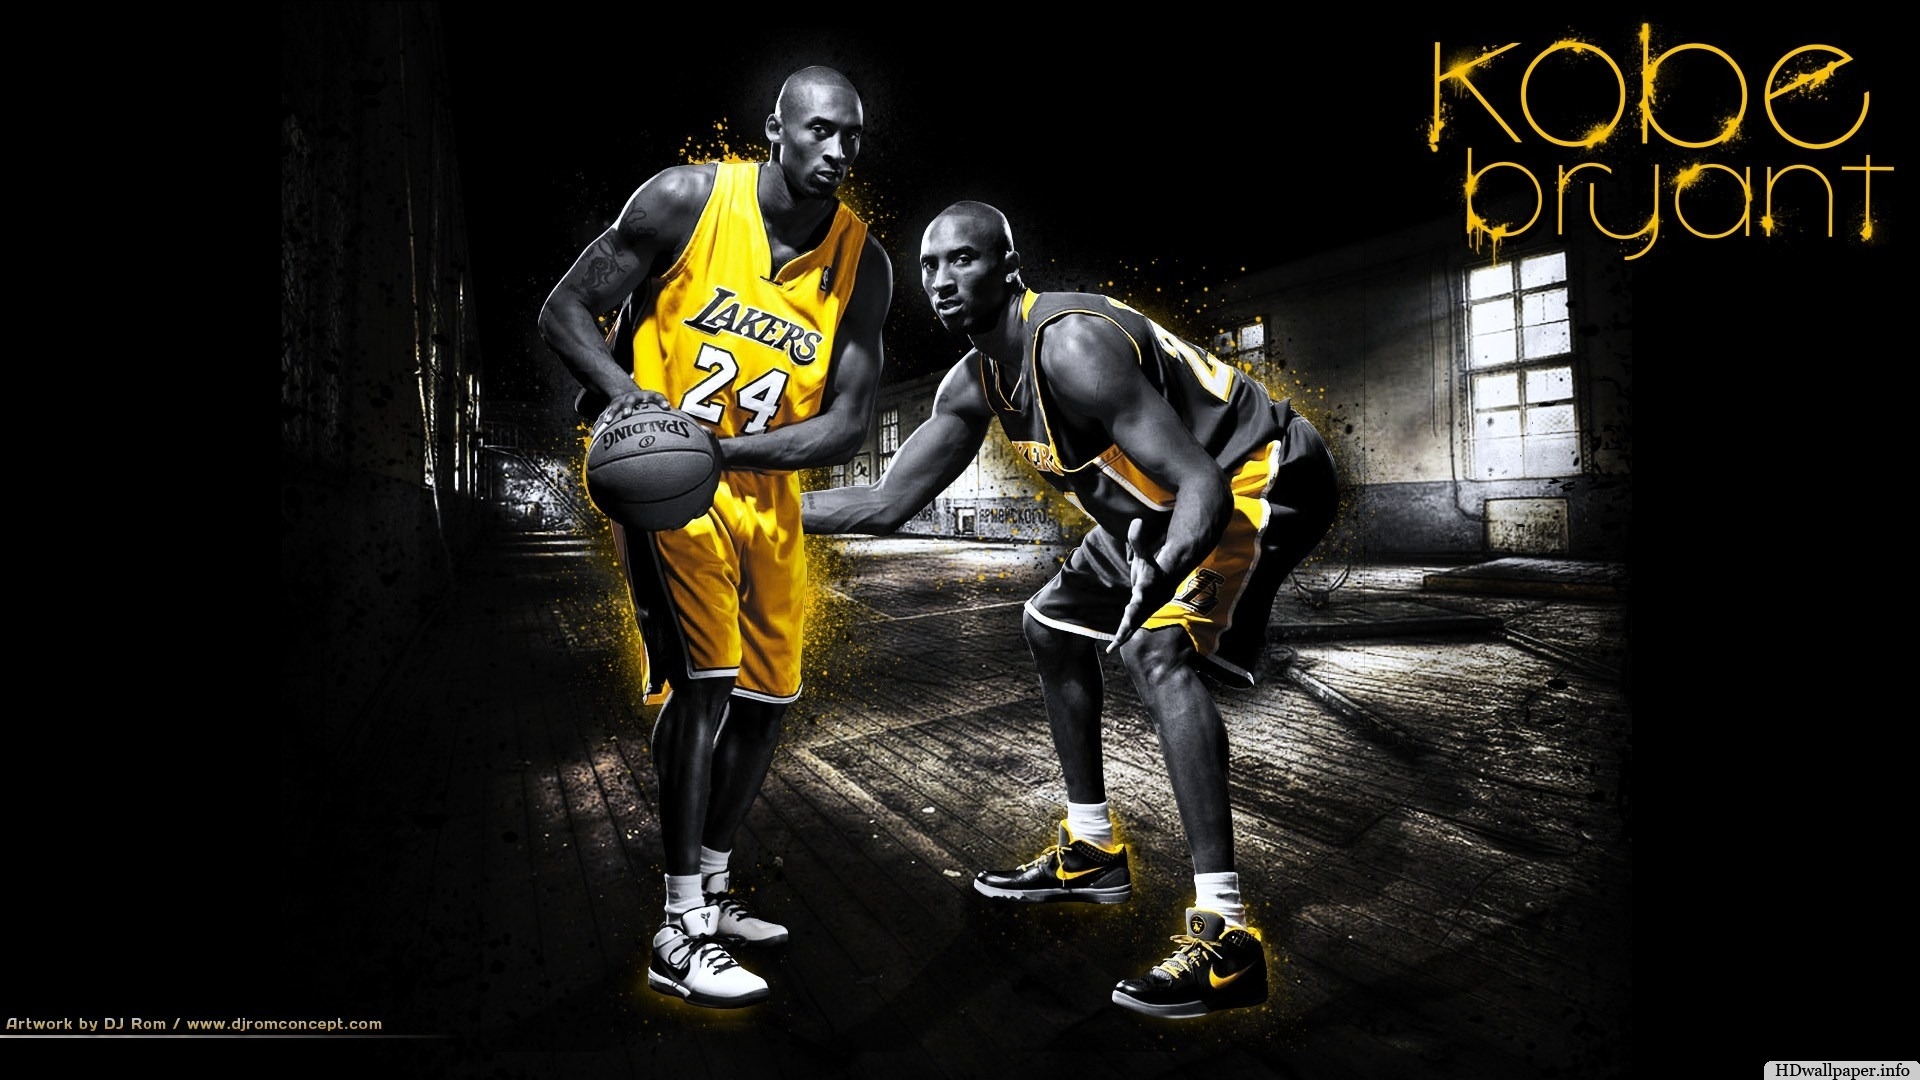 La Lakers Wallpaper HD